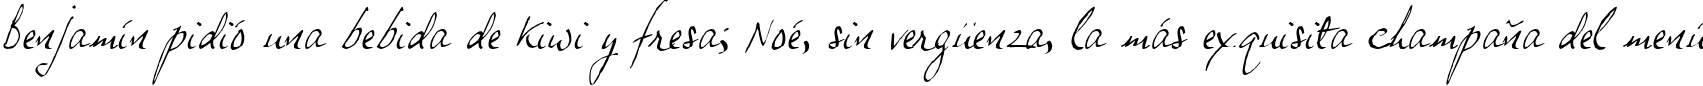 Пример написания шрифтом JP Hand Slanted текста на испанском